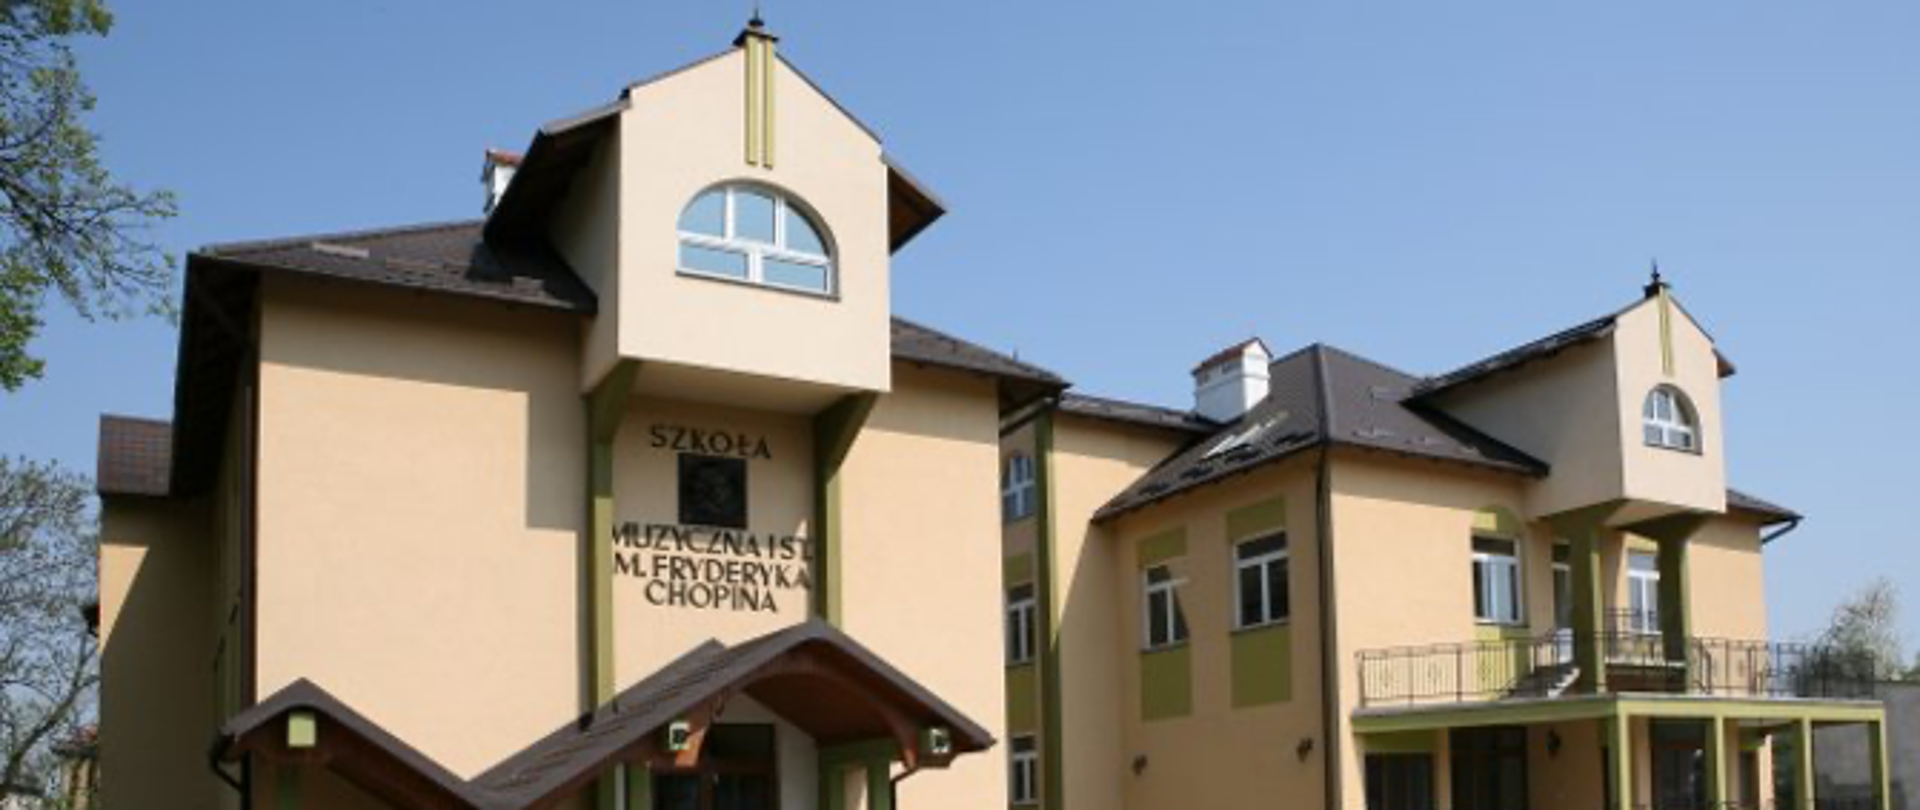 Zdjęcie budynku ZPSM im. F. Chopina w Jarosławiu